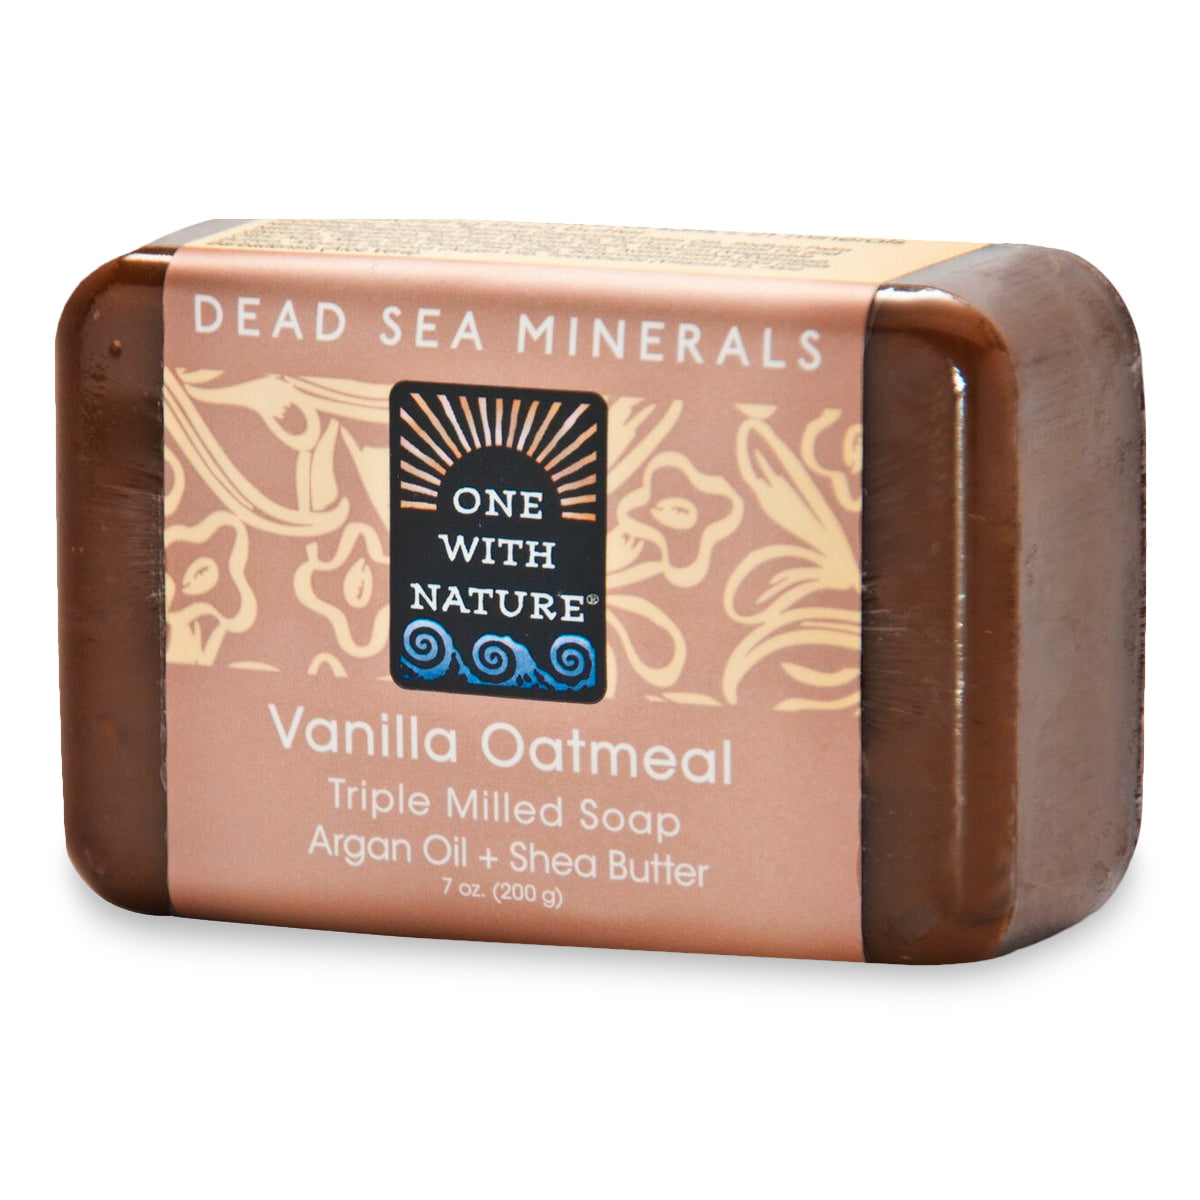 Primary image of Dead Sea Mineral Soap - Vanilla Oatmeal